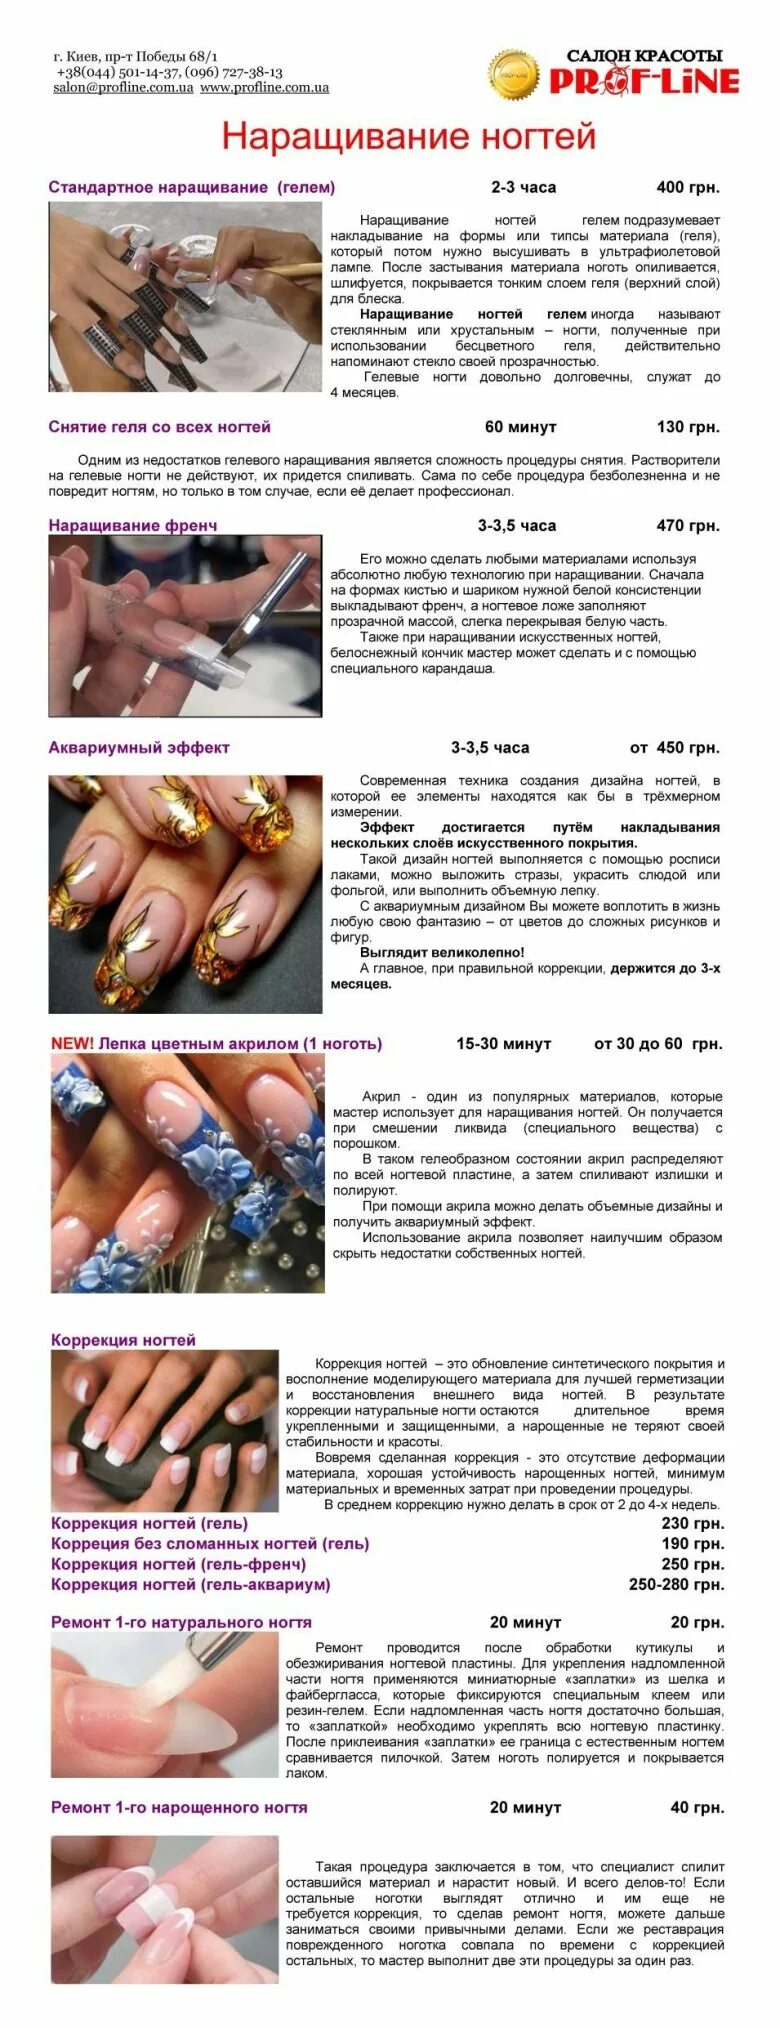 Что нужно перед наращиванием. Наращивание ногтей пошагово с описанием. Технология наращивания ногтей. Гель для моделирования ногтей. Порядок коррекции нарощенных ногтей гель лаком.